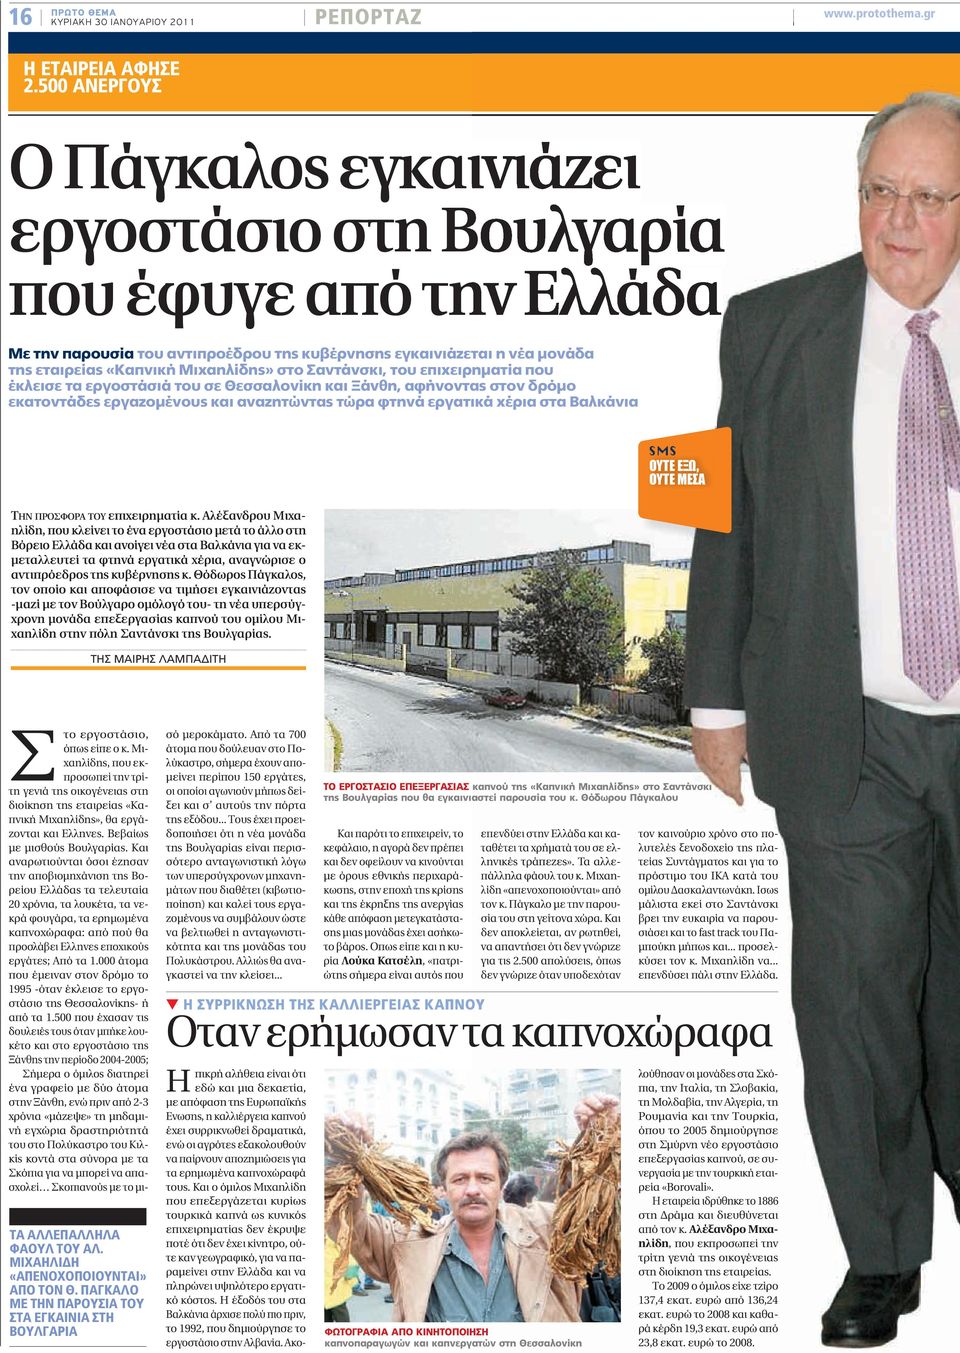 Σαντάνσκι, του επιχειρηματία που έκλεισε τα εργοστάσιά του σε Θεσσαλονίκη και Ξάνθη, αφήνοντας ας στον δρόμο εκατοντάδες εργαζομένους και αναζητώντας τώρα φτηνά εργατικά χέρια στα Βαλκάνια SMS ΟΥΤΕ